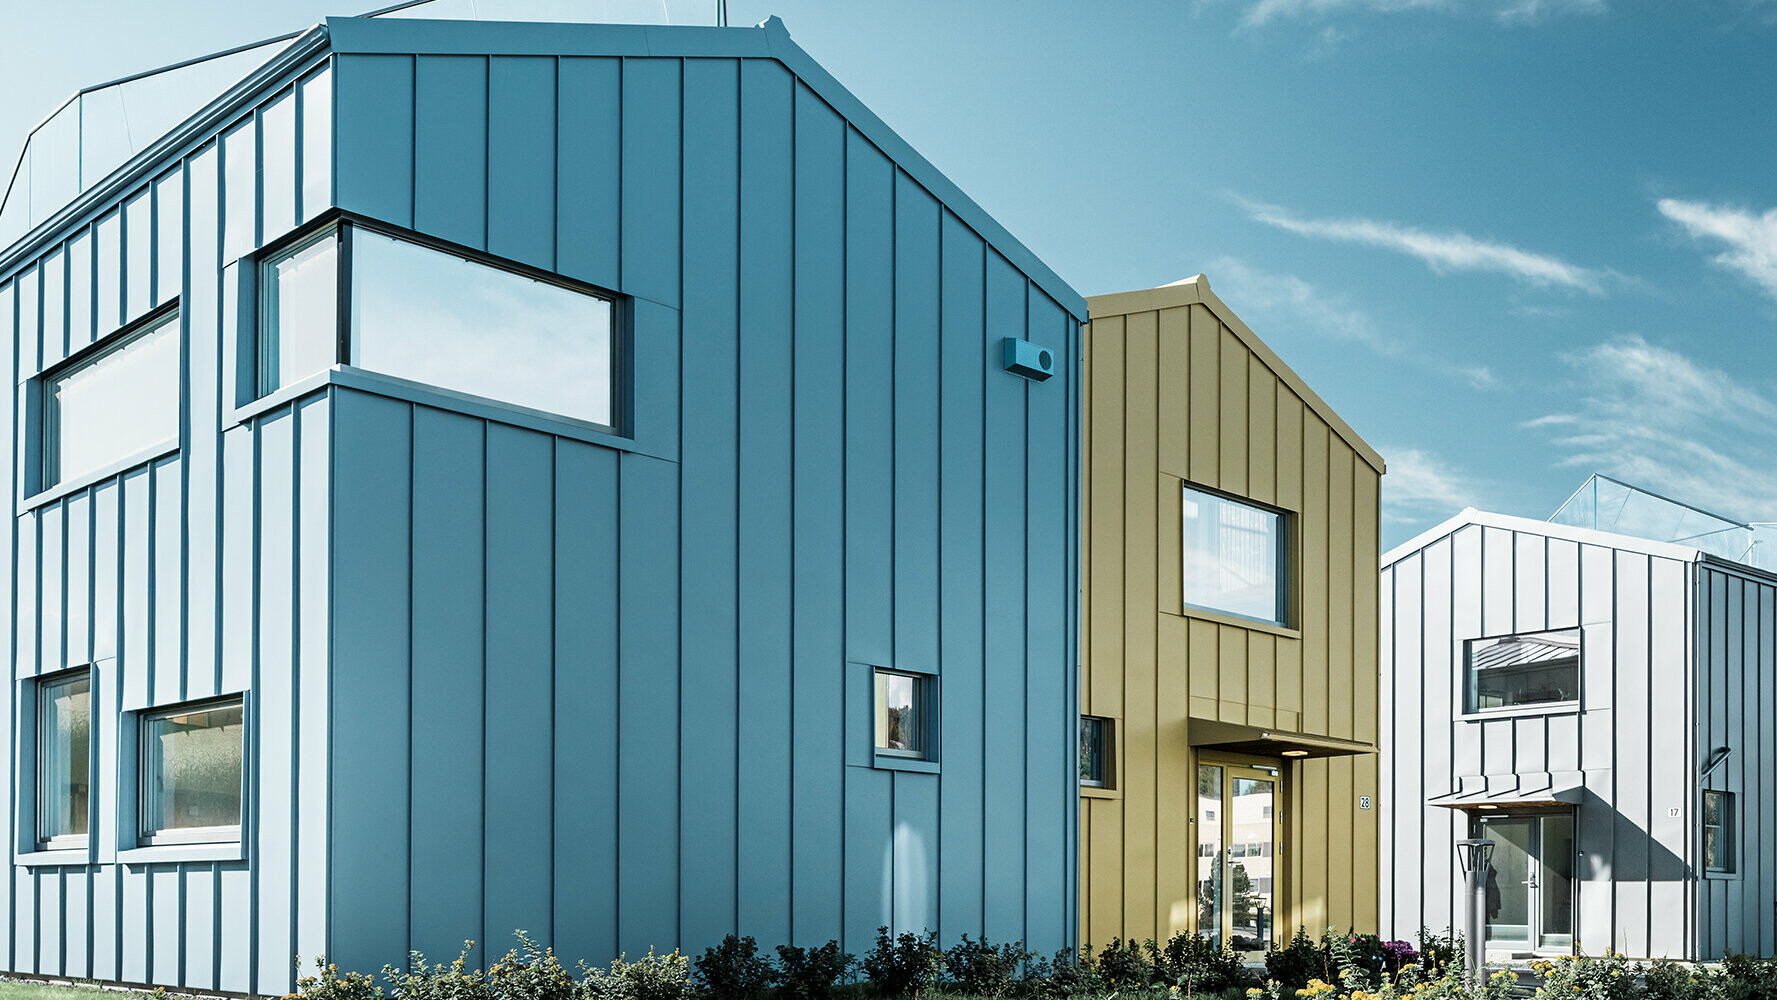 Case unifamiliari in un complesso di abitazioni con tetti e facciate in alluminio in varie colorazioni.